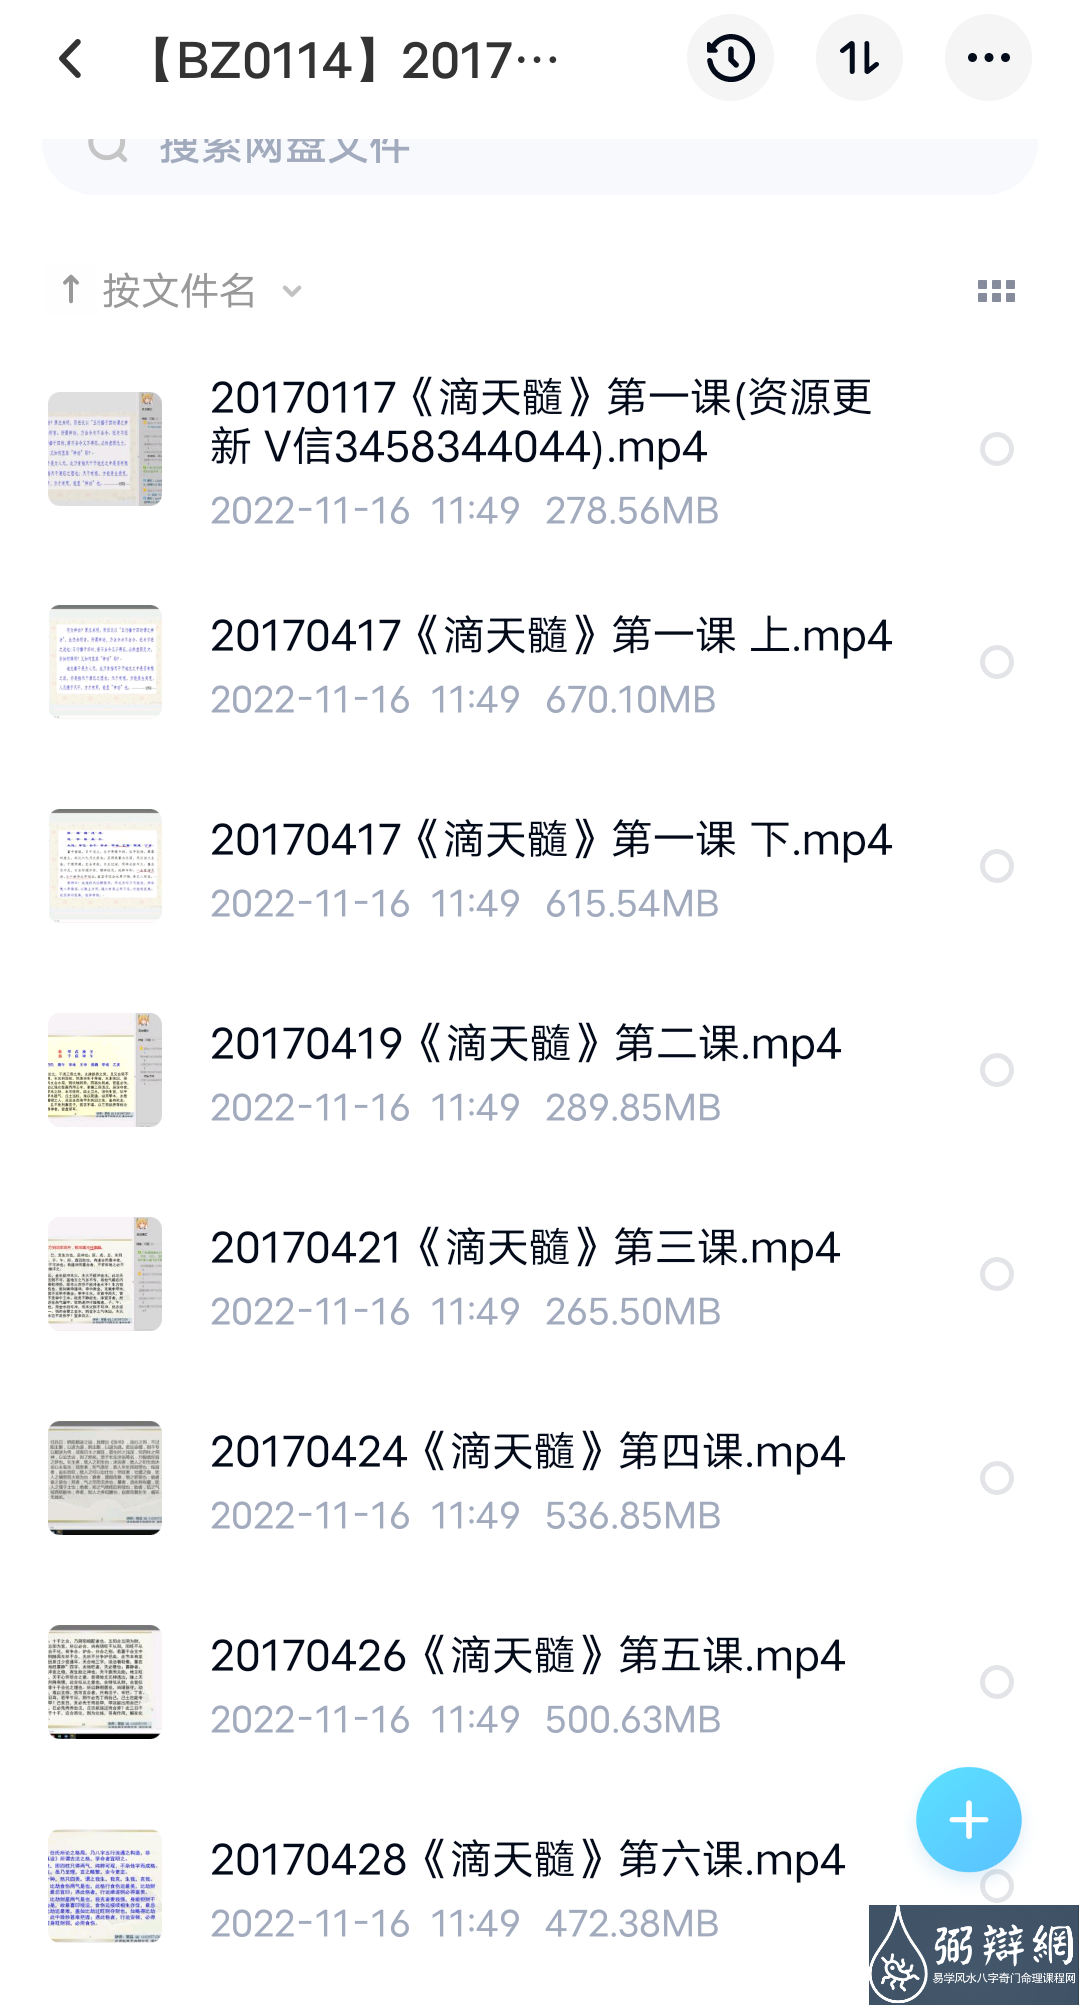 2017漫画命理滴天髓第二期SP(30集 13G） 百度网盘下载(图1)